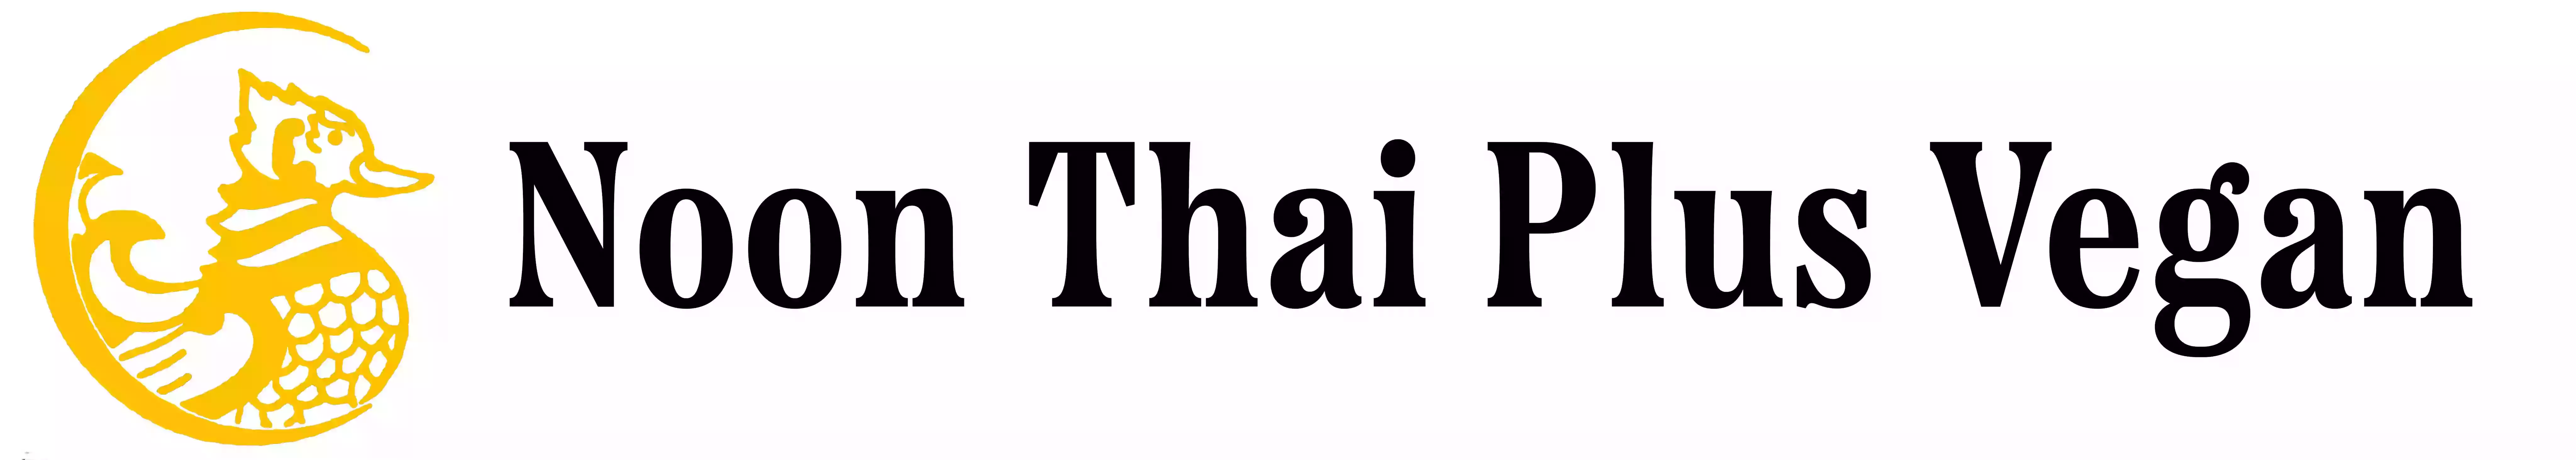 Noon Thai Plus Vegan